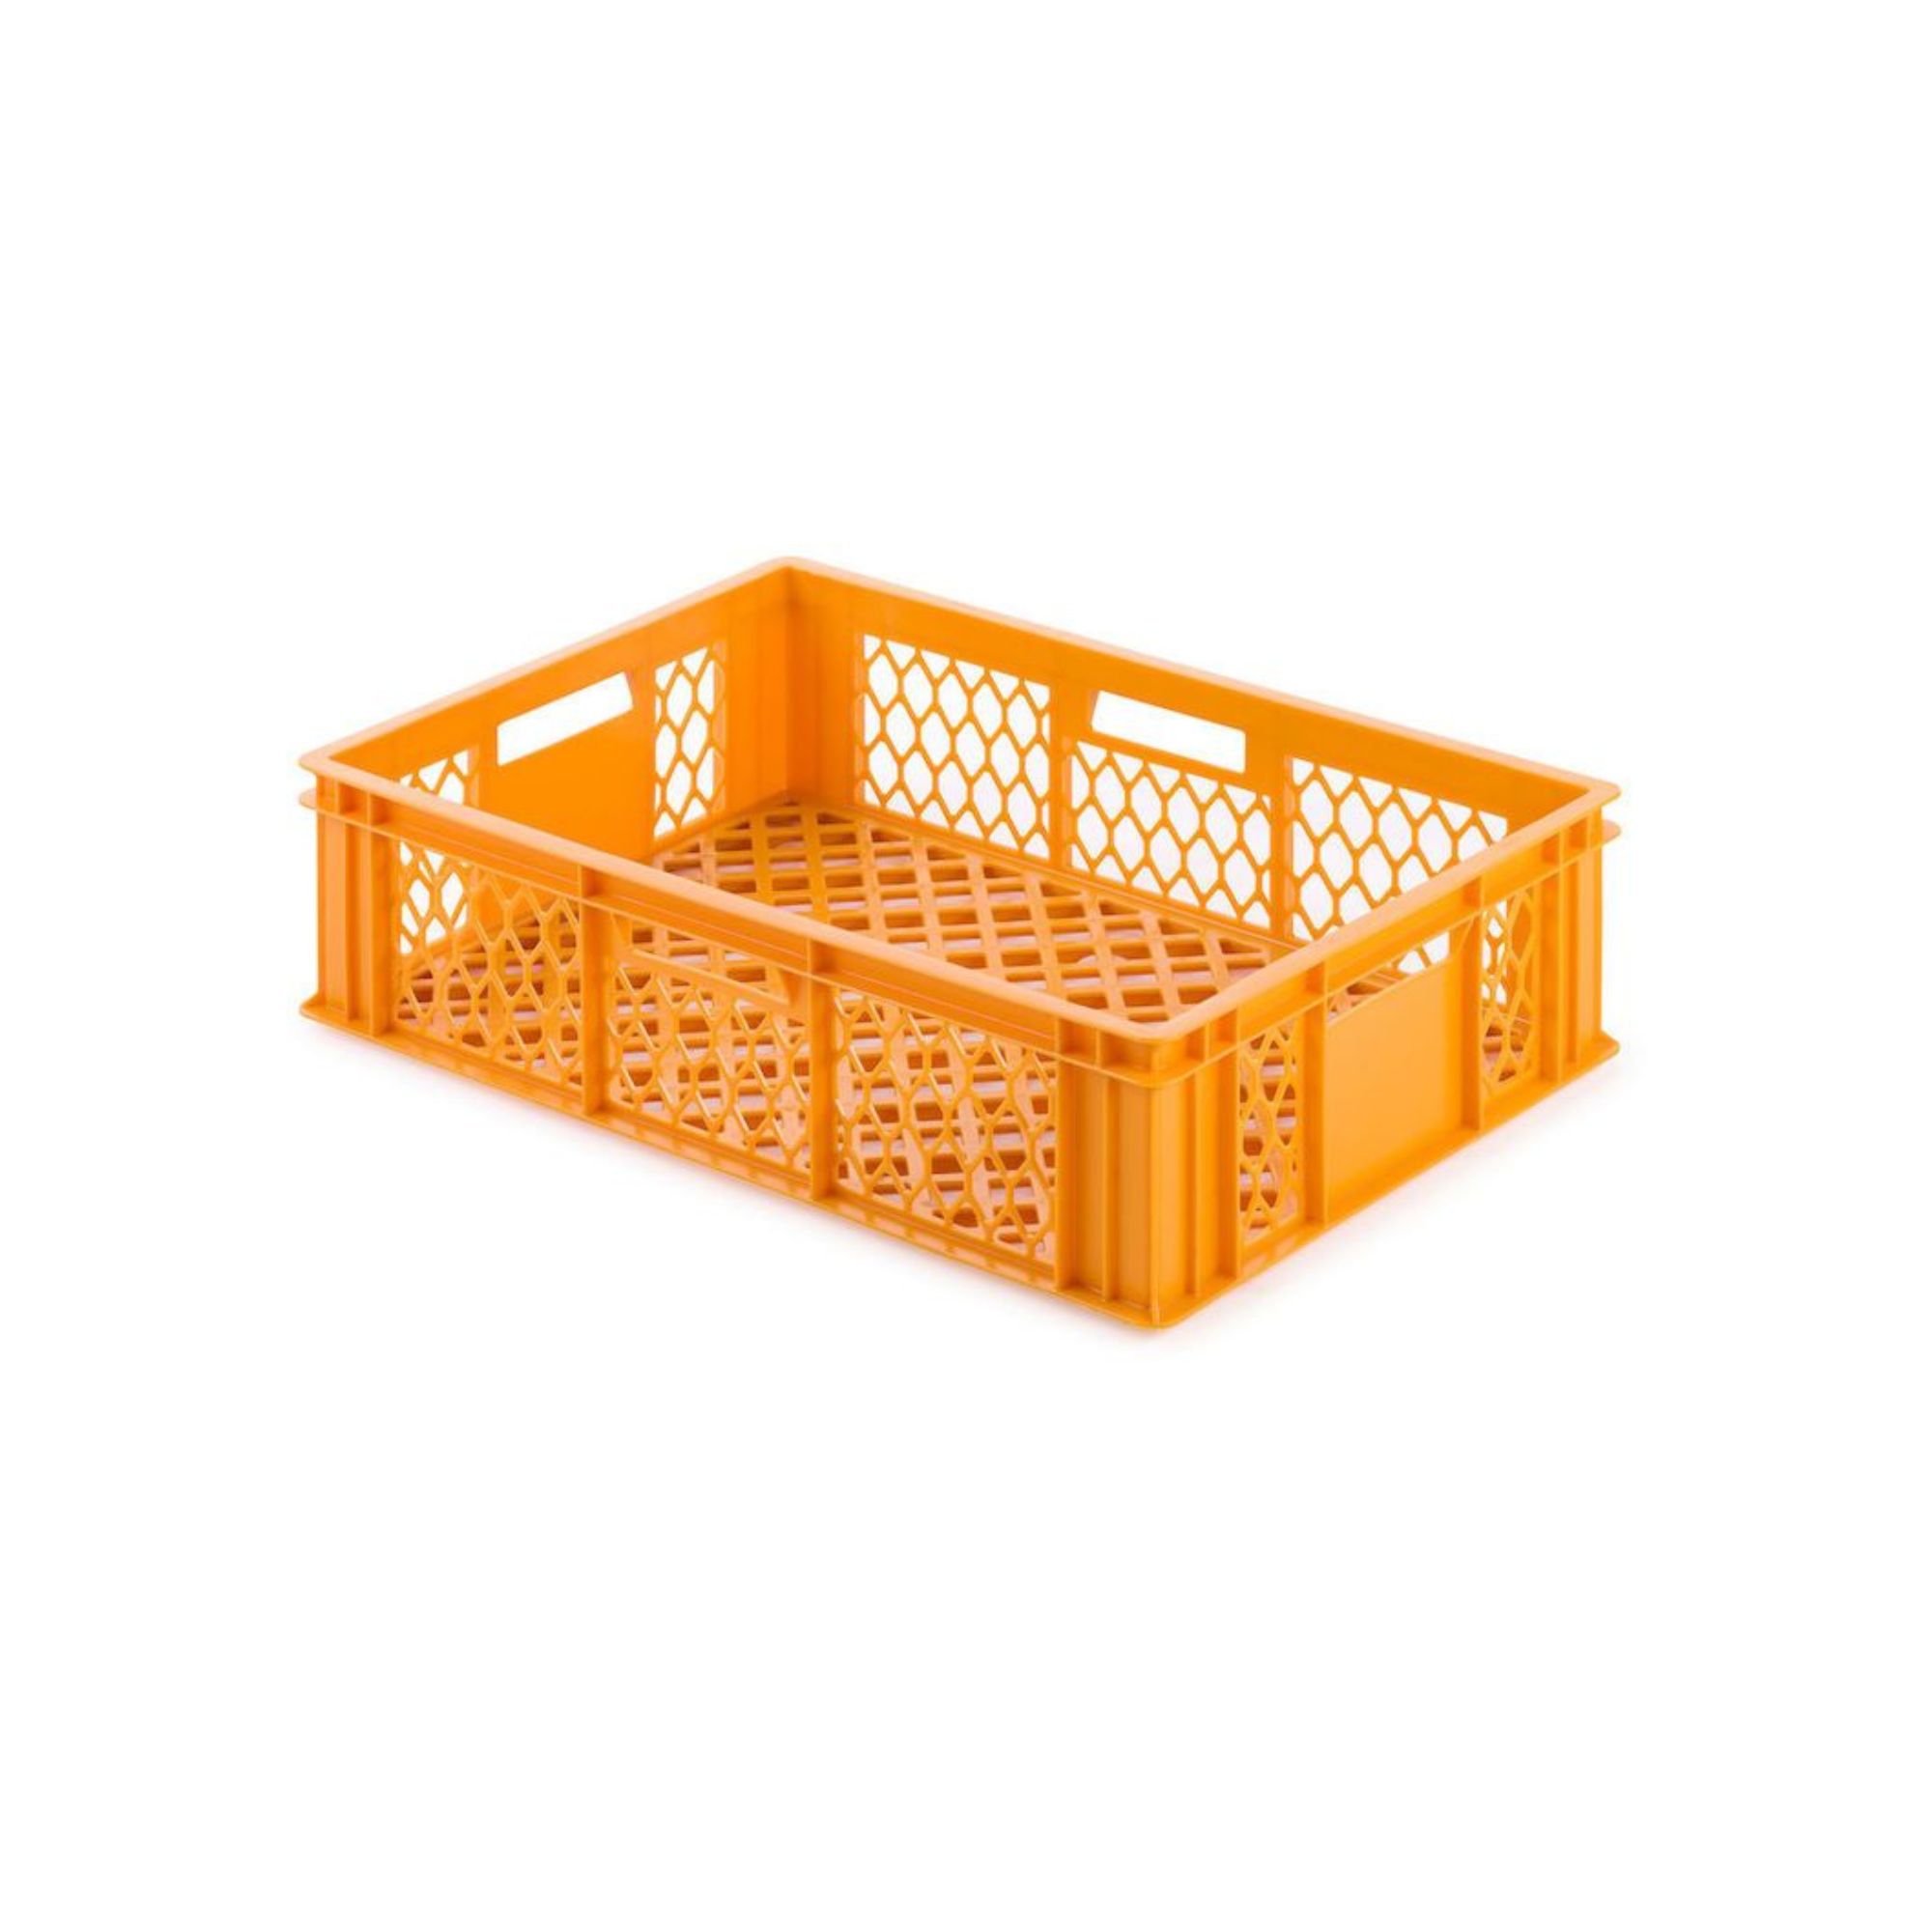 Eurobehälter Bäcker- & Konditorenkasten | HxBxT 17,1x40x60 | 33 Liter | Gelb-Orange | Brötchenkiste, stapelbare Bäckerkiste